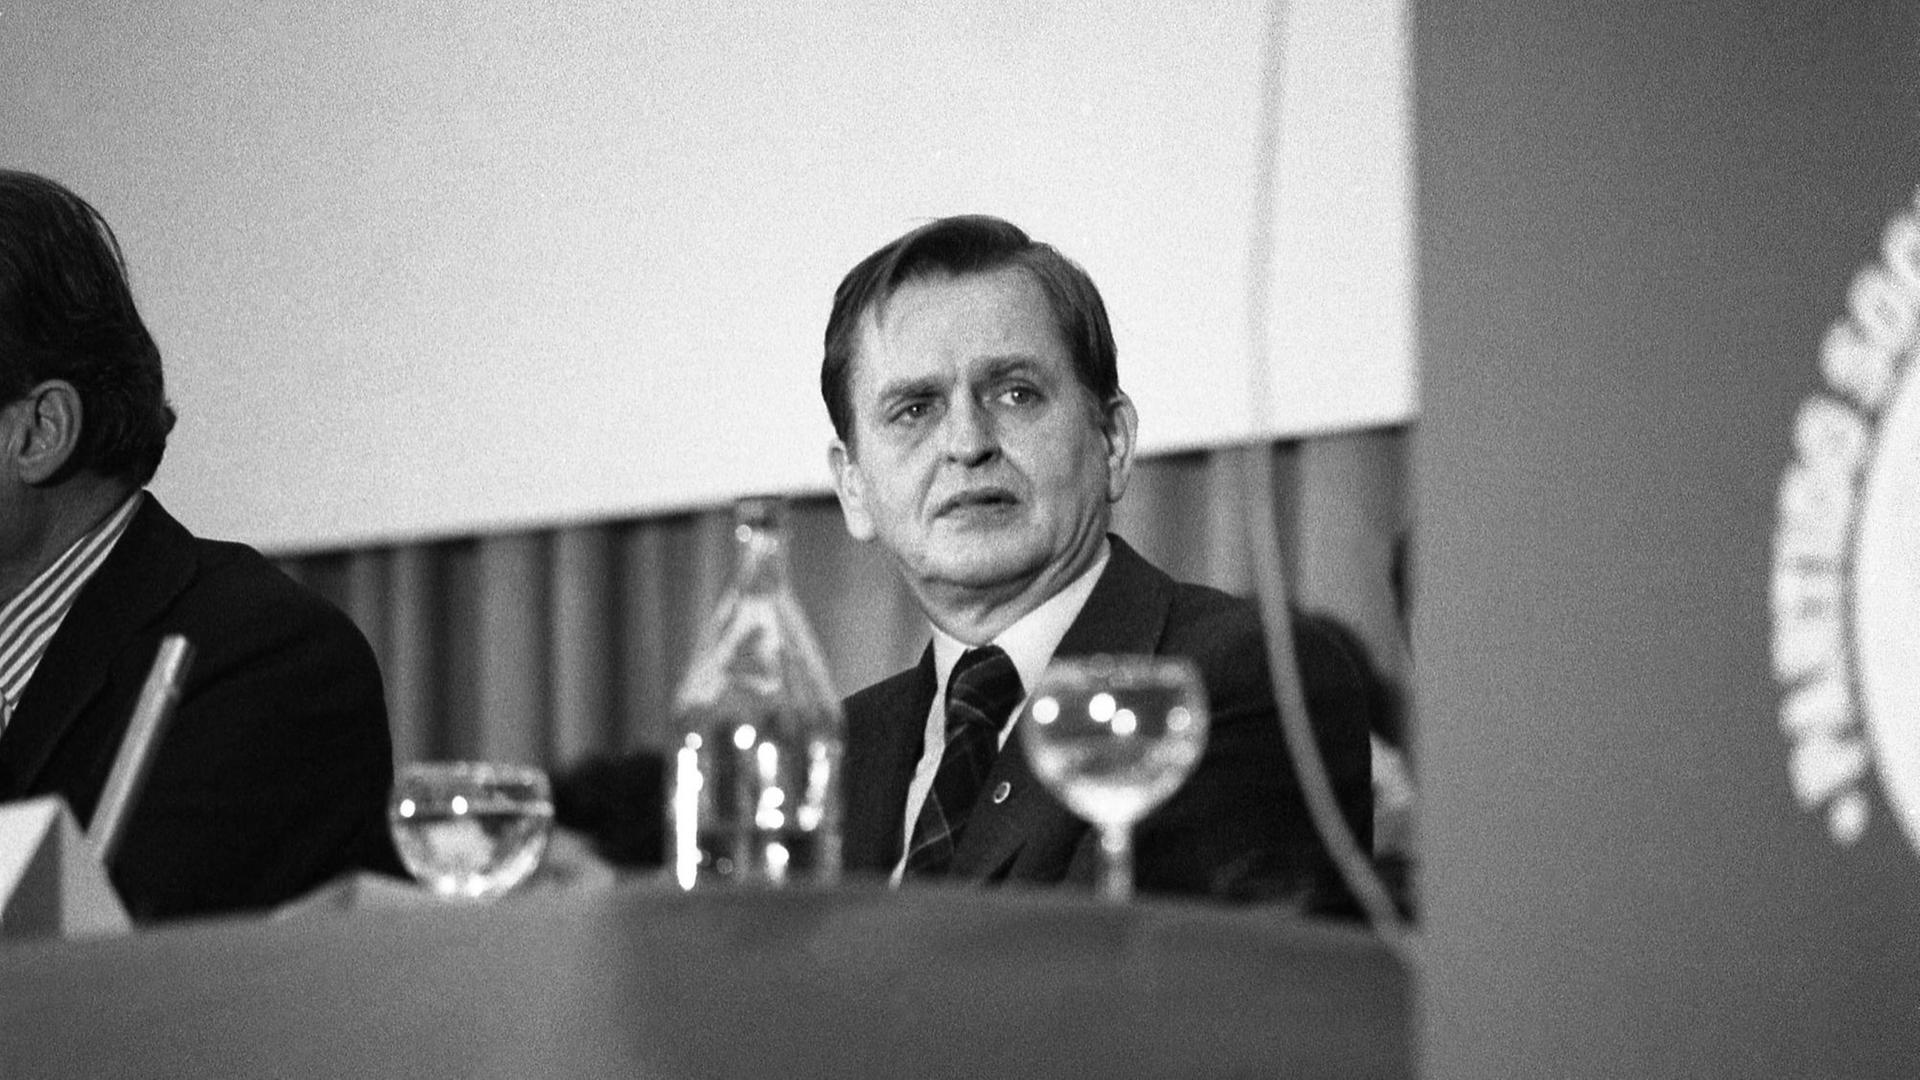 Olof Palme, bei einem Kongress am Tisch sitzend. Im Vordergrund Gläser.